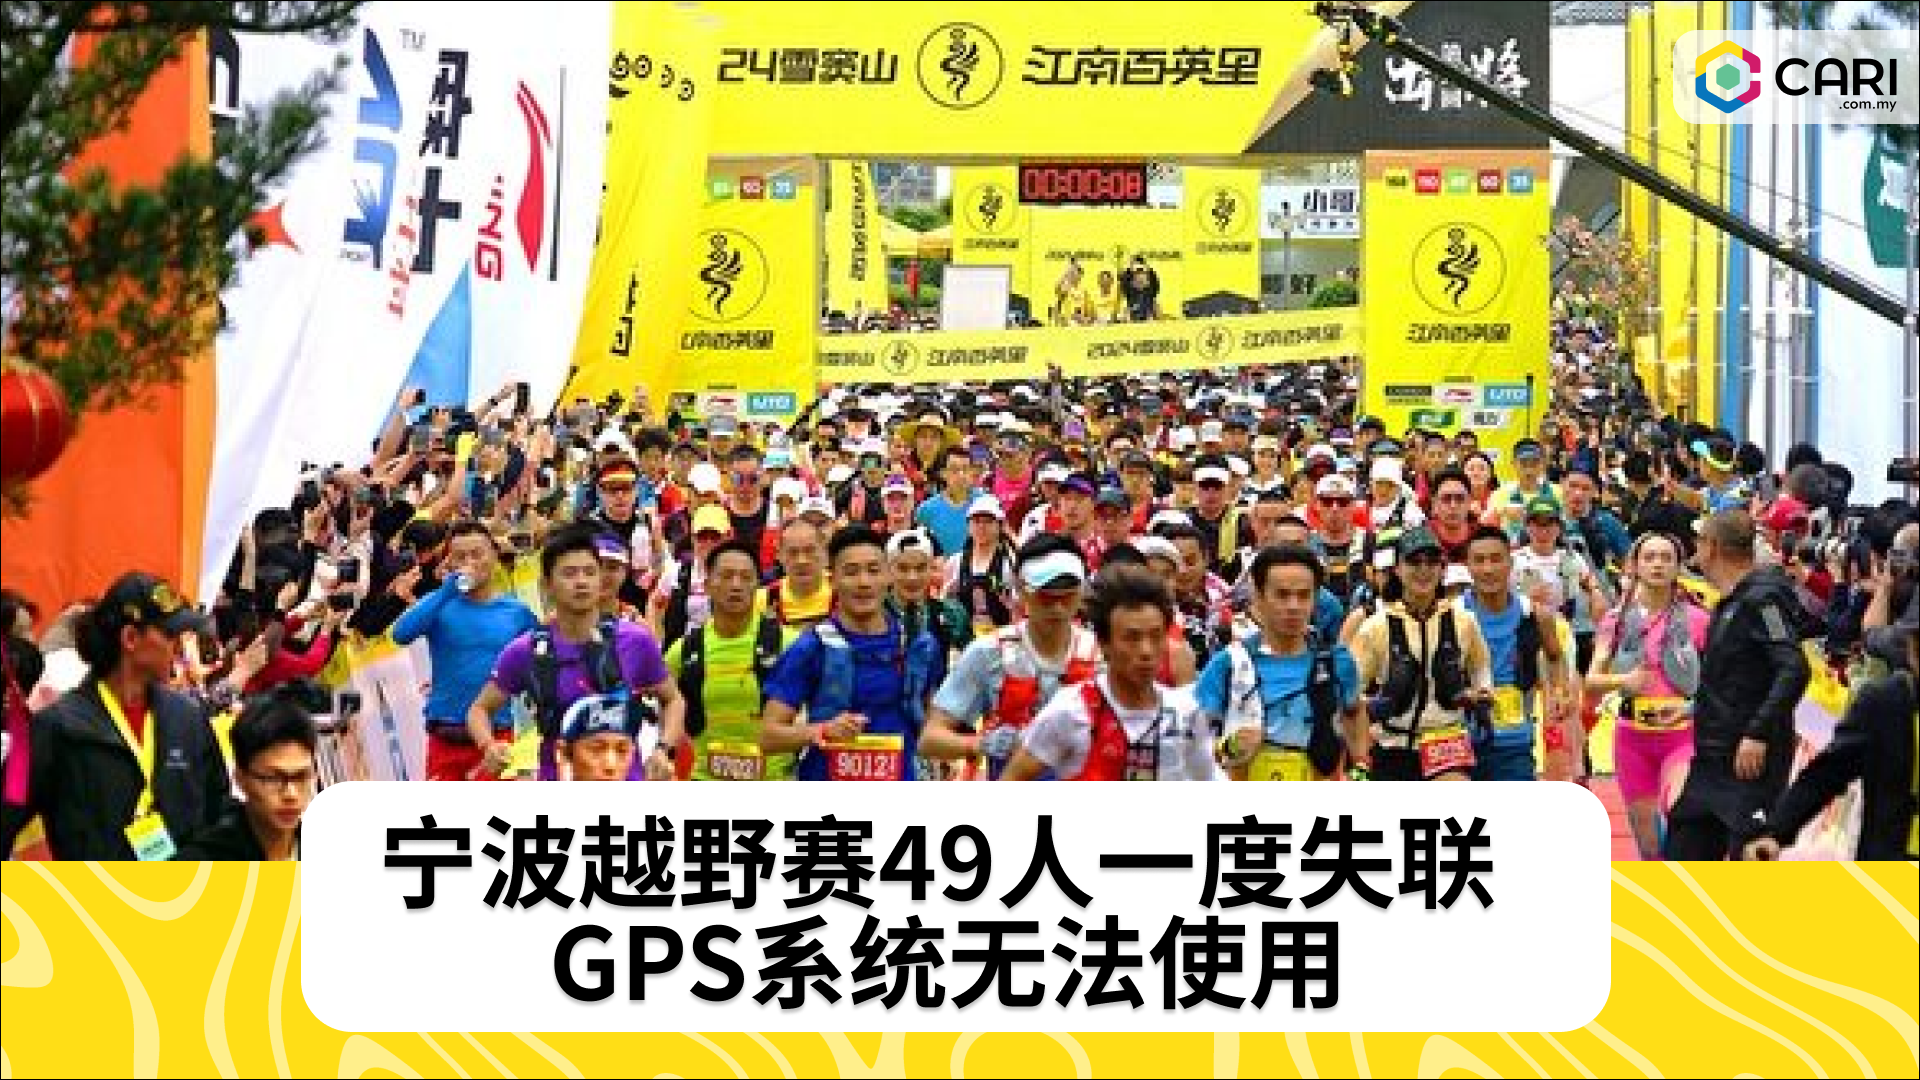 宁波越野赛49人一度失联 GPS系统无法使用